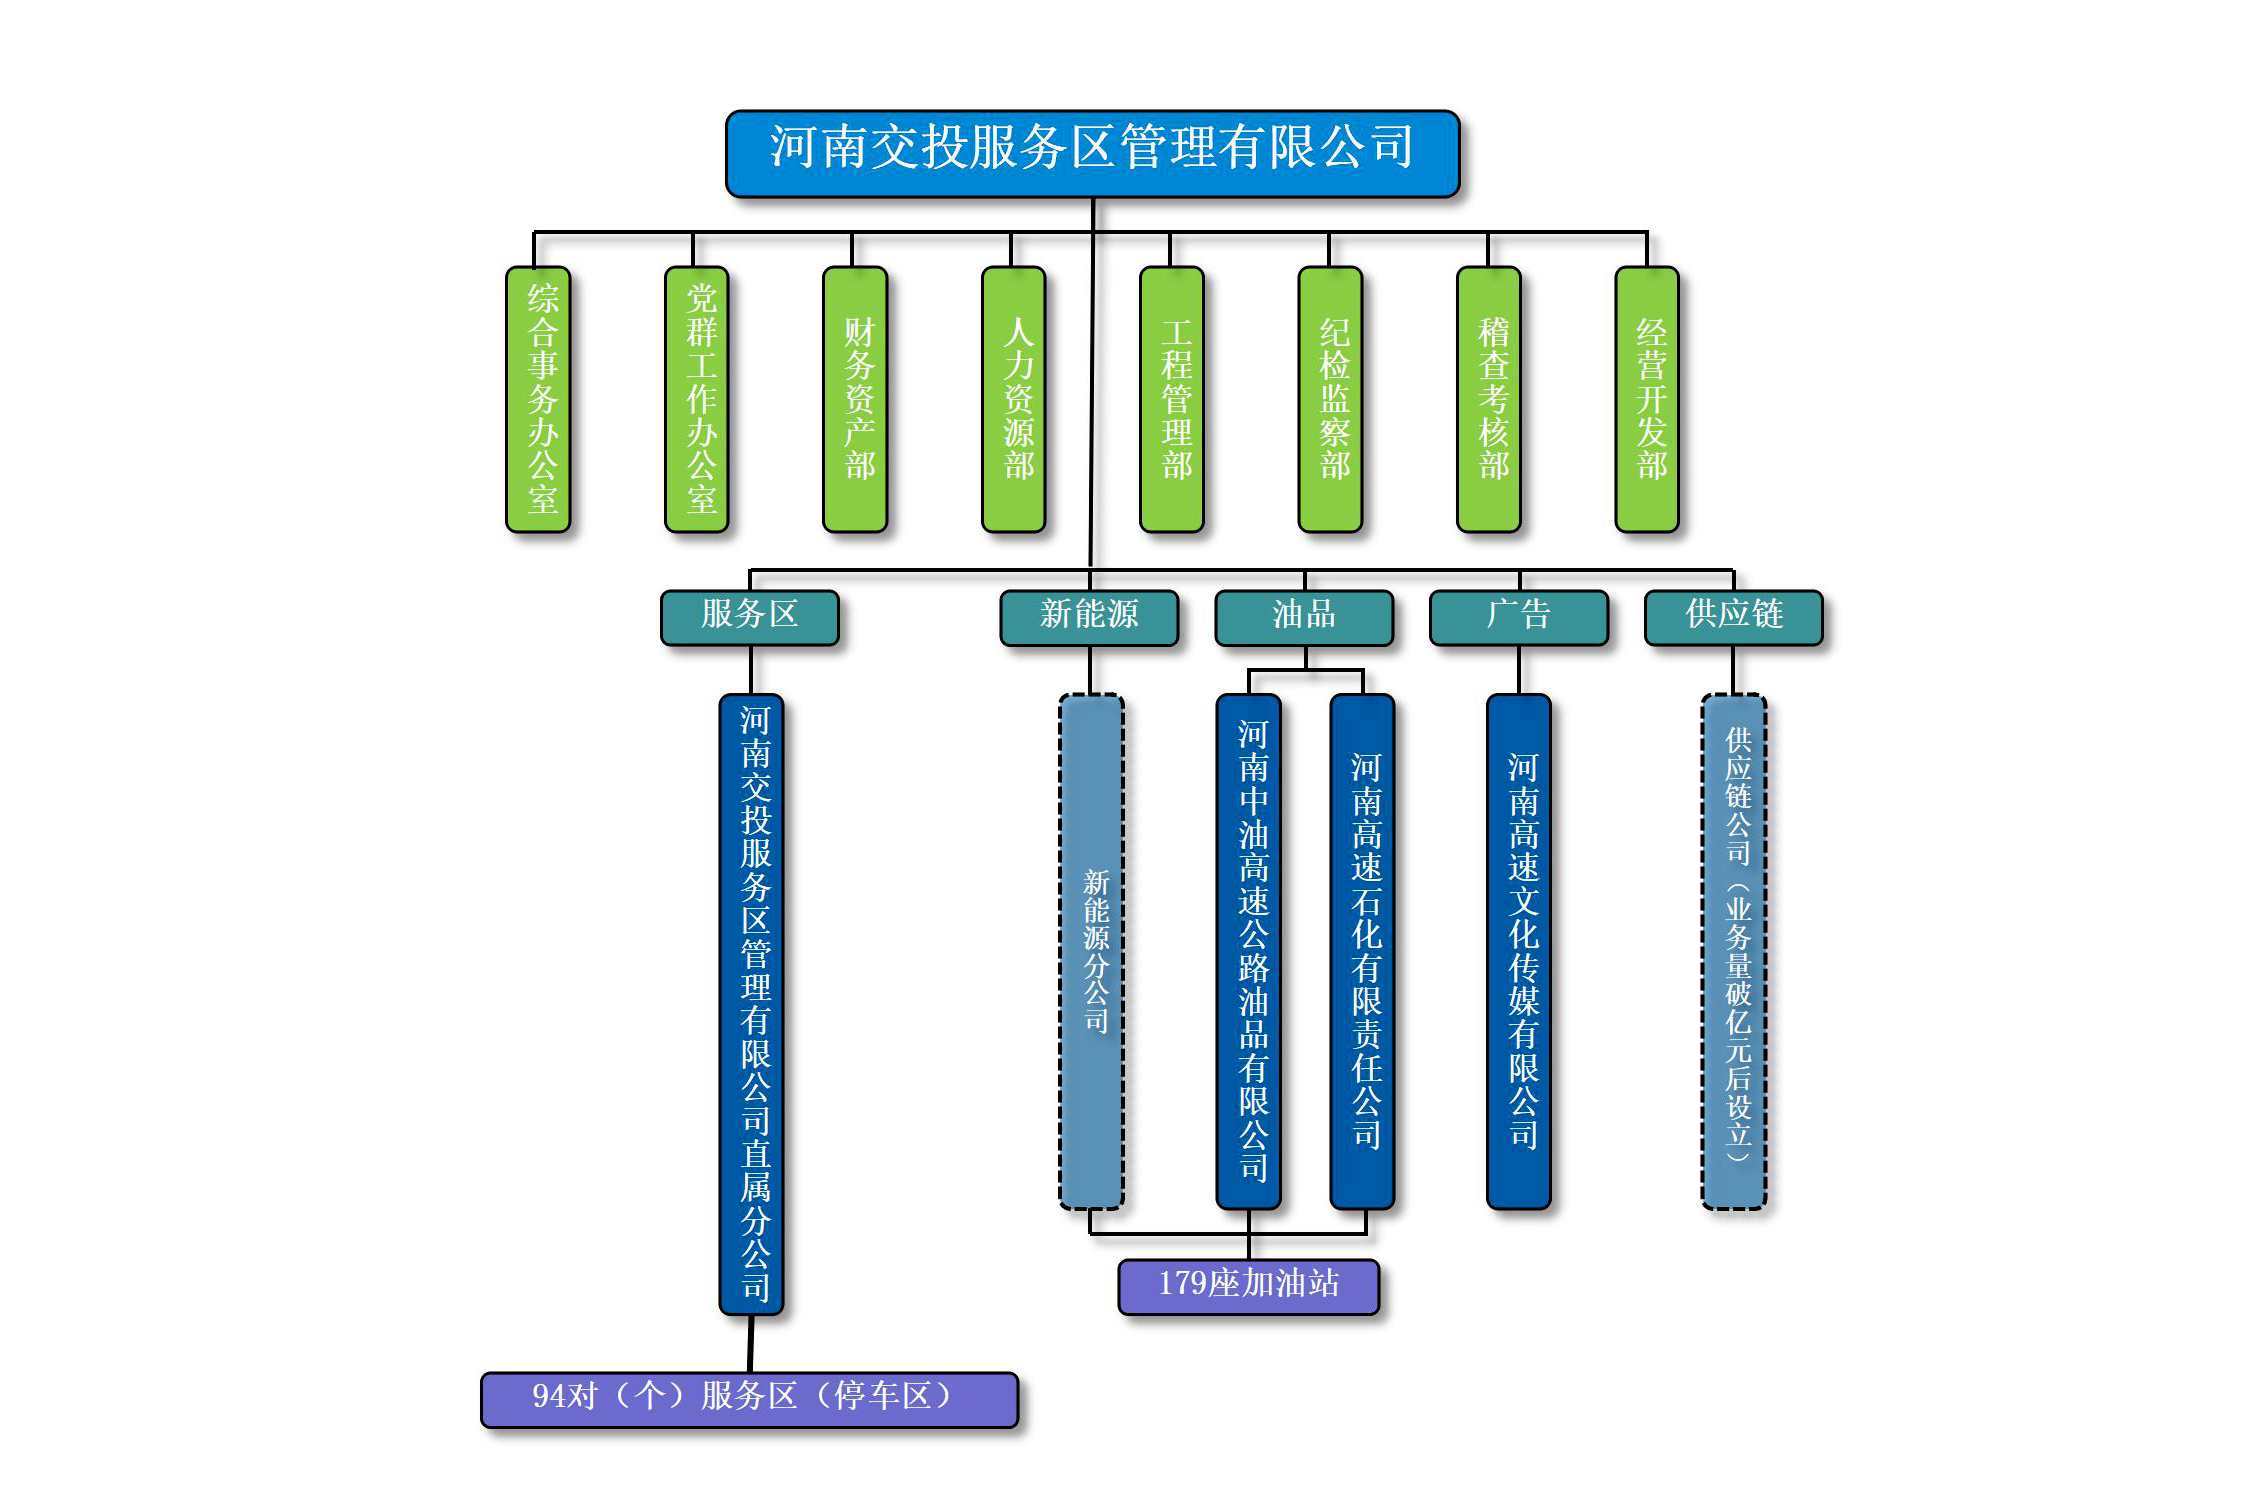 交投服务区公司组织结构图_01.jpg